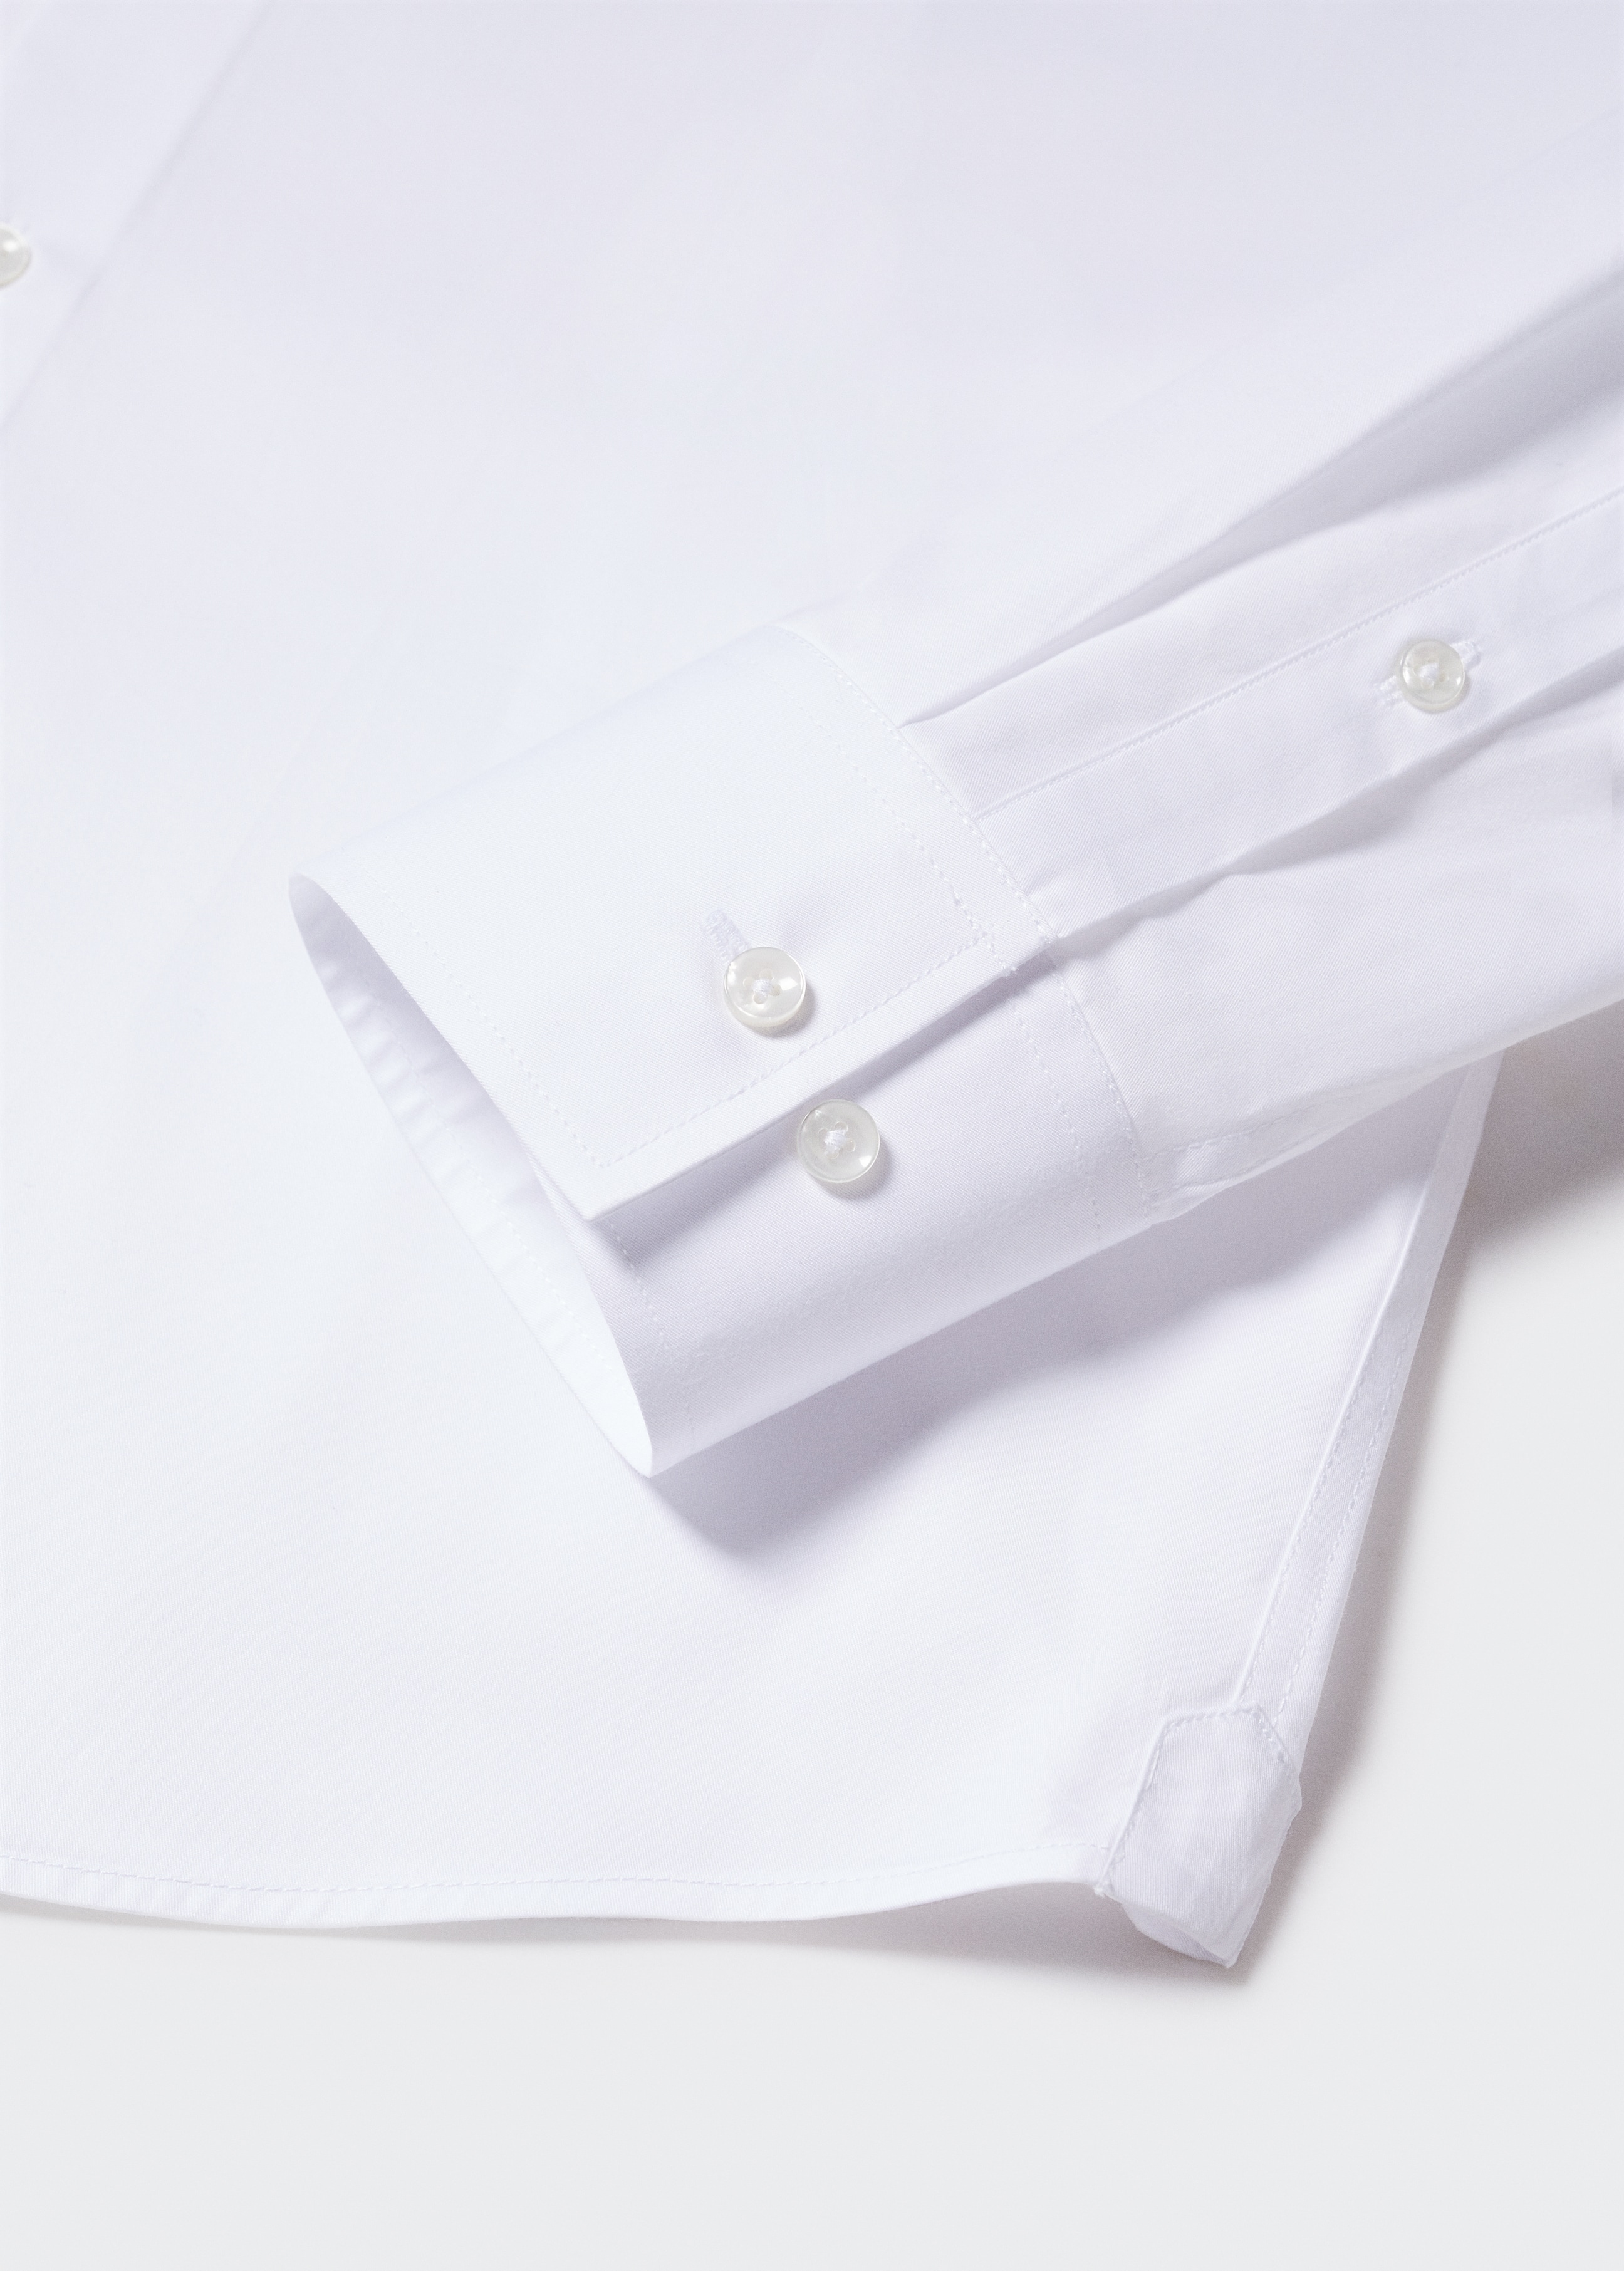 Slim fit cotton suit shirt - Details of the article 8